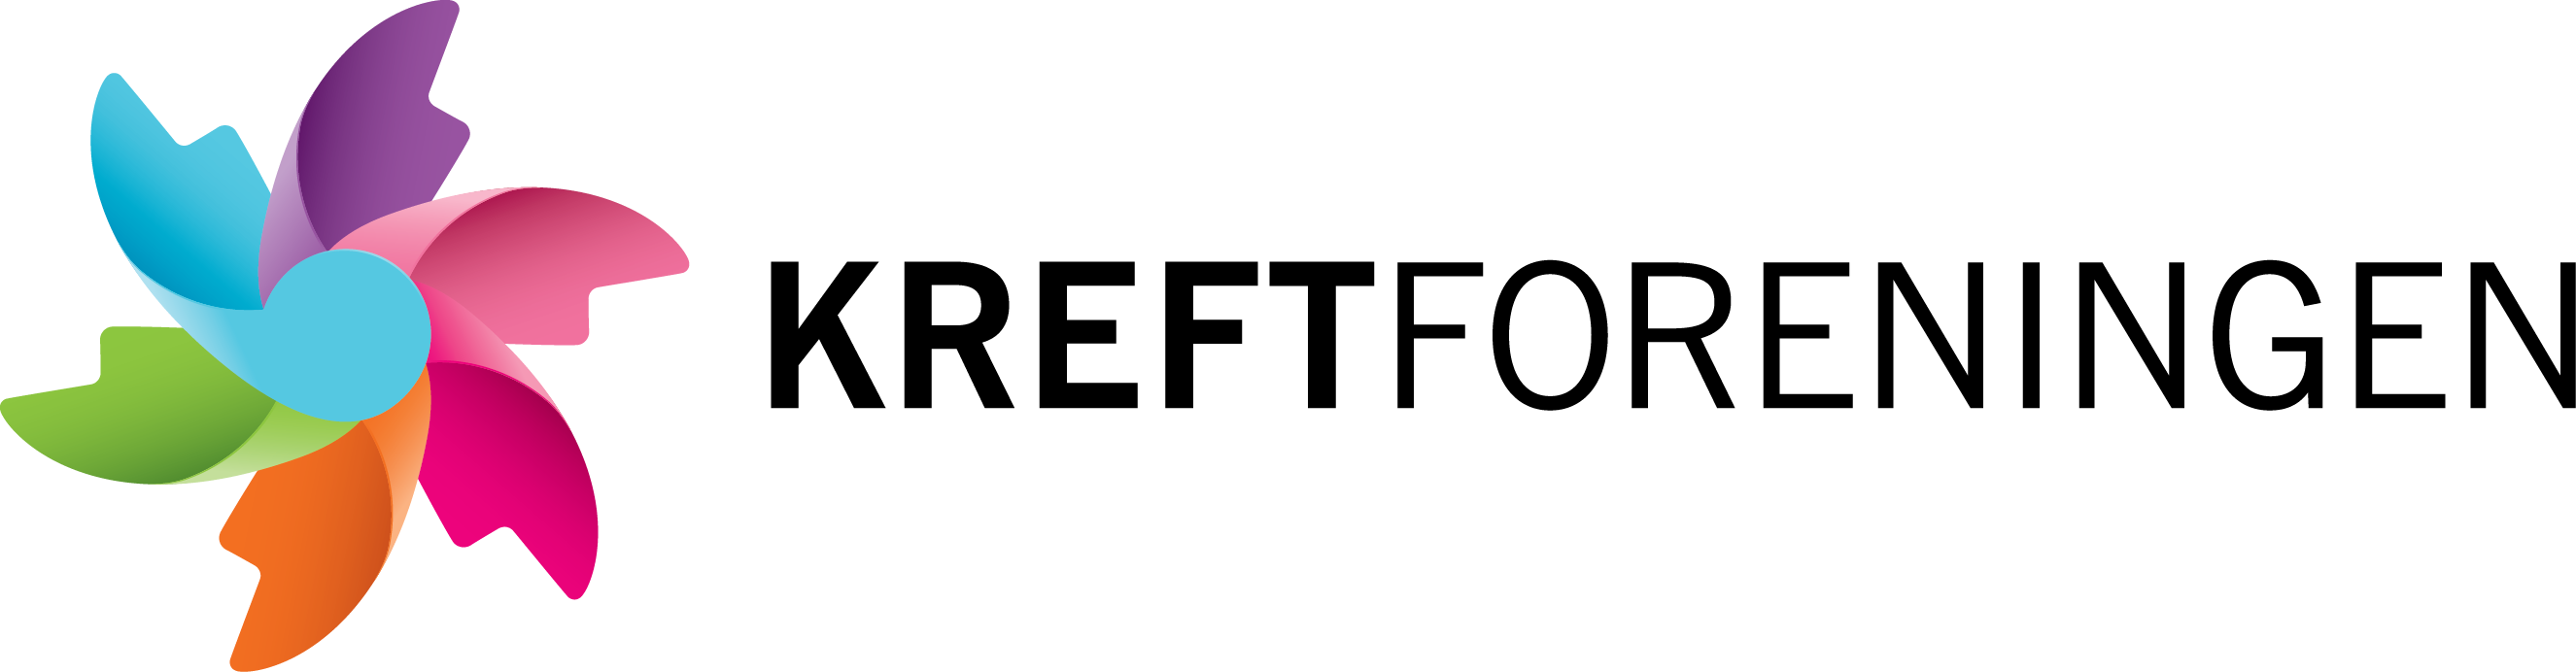 kreftforeningen-logo